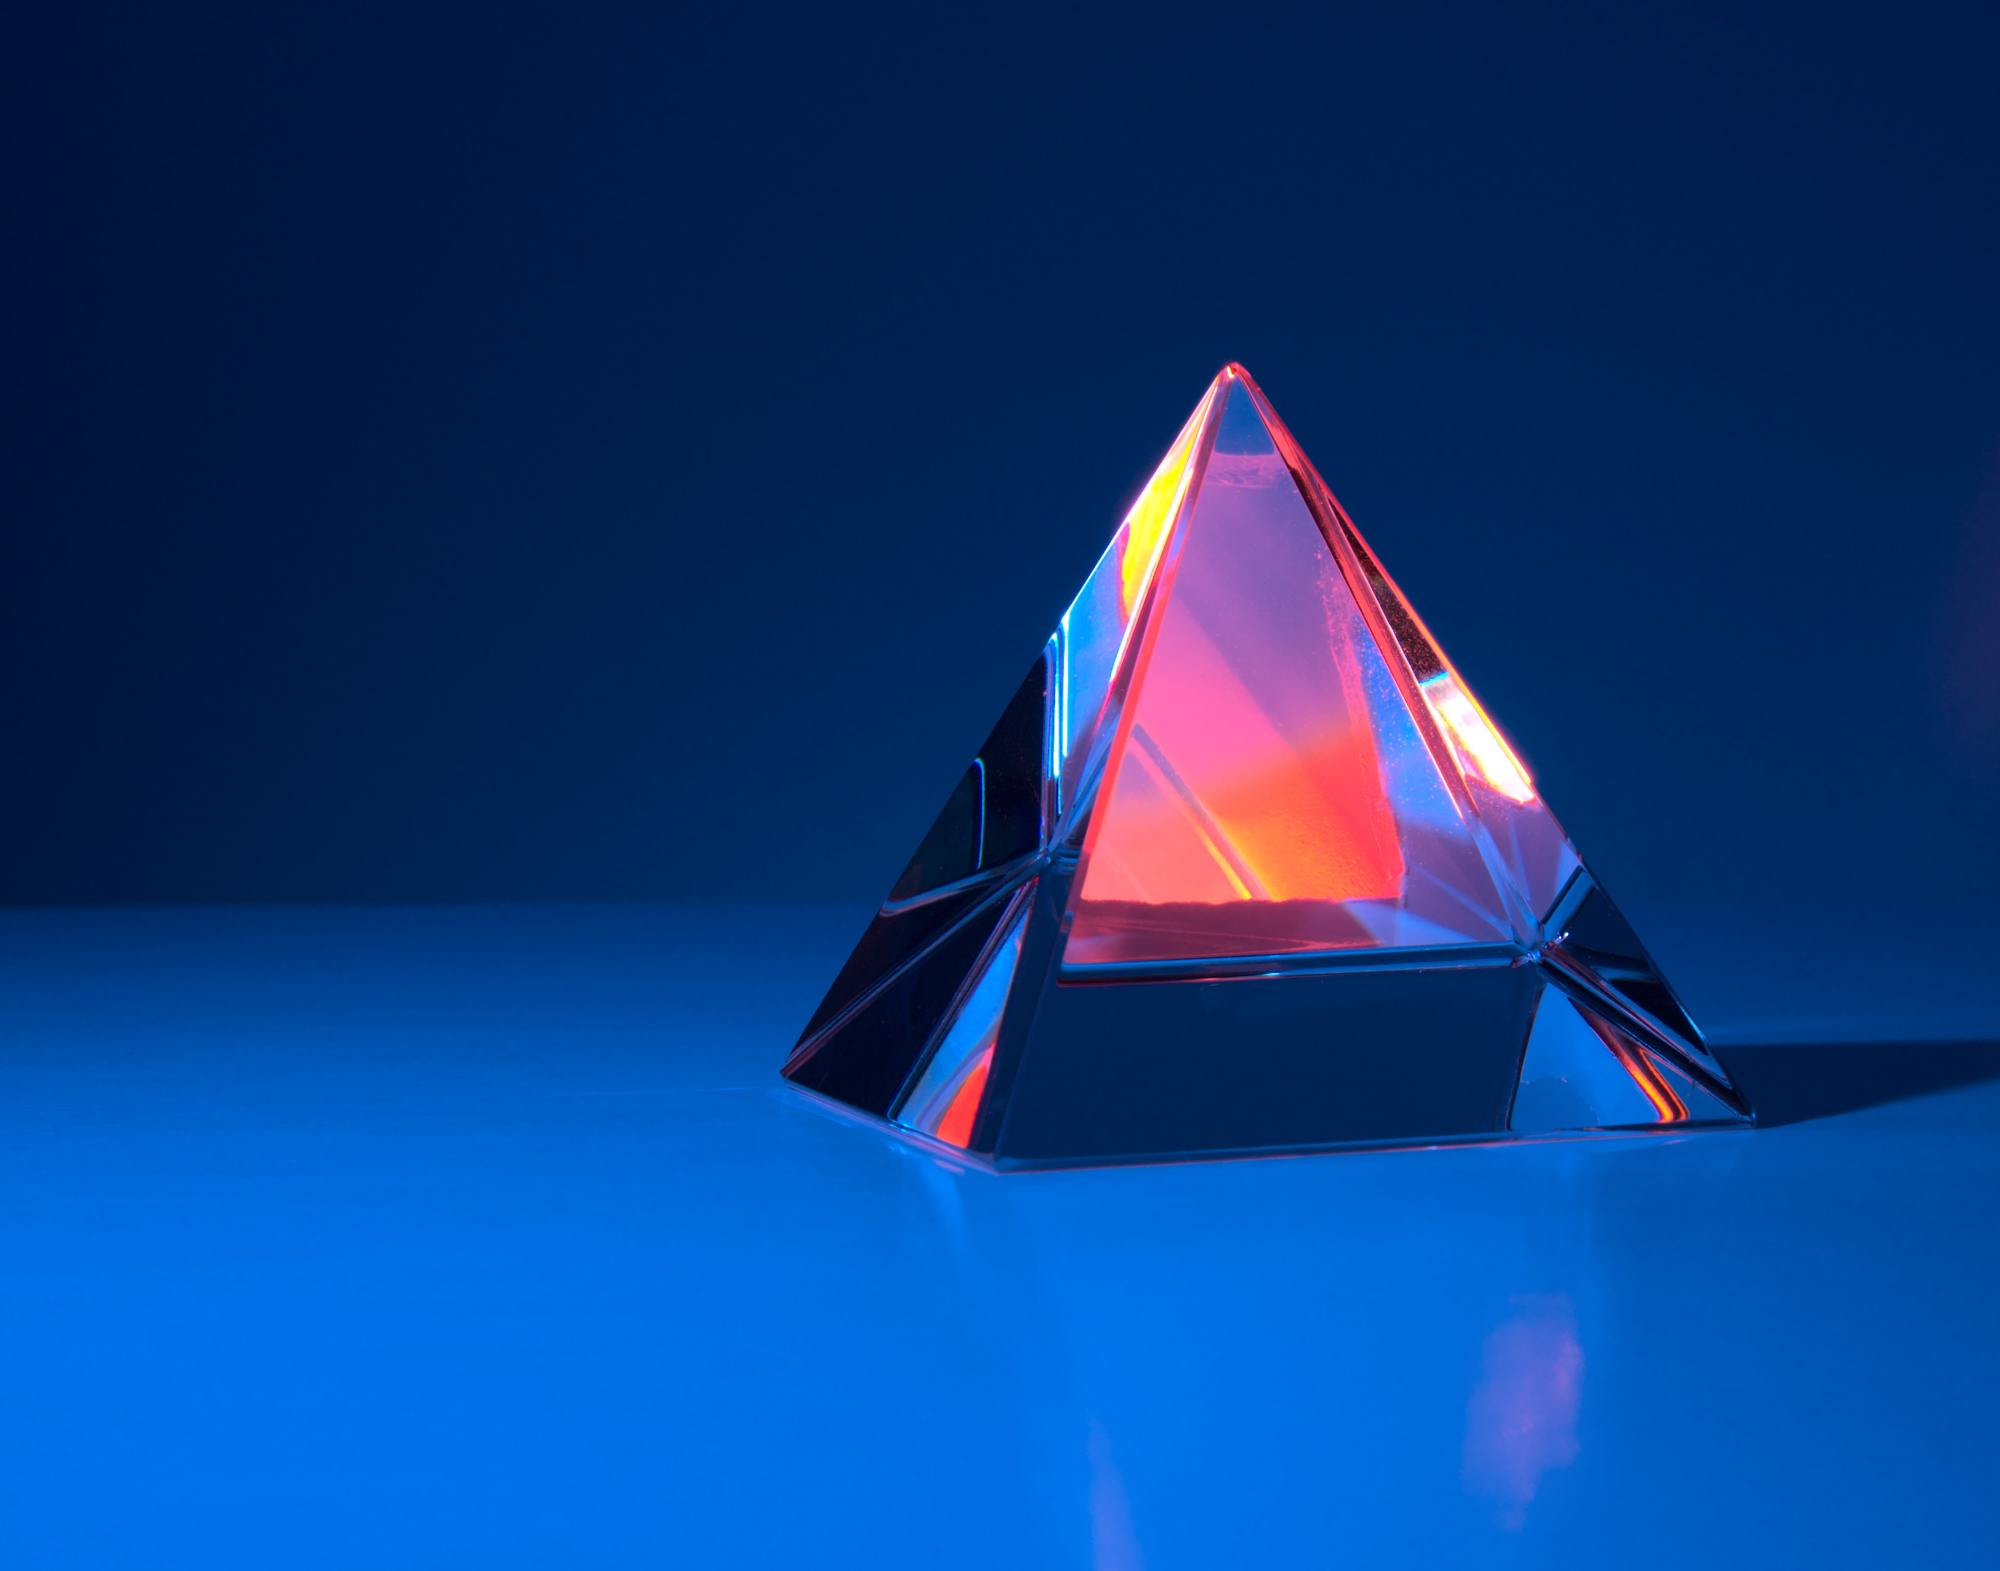 Une pyramide de verre sur fon bleu